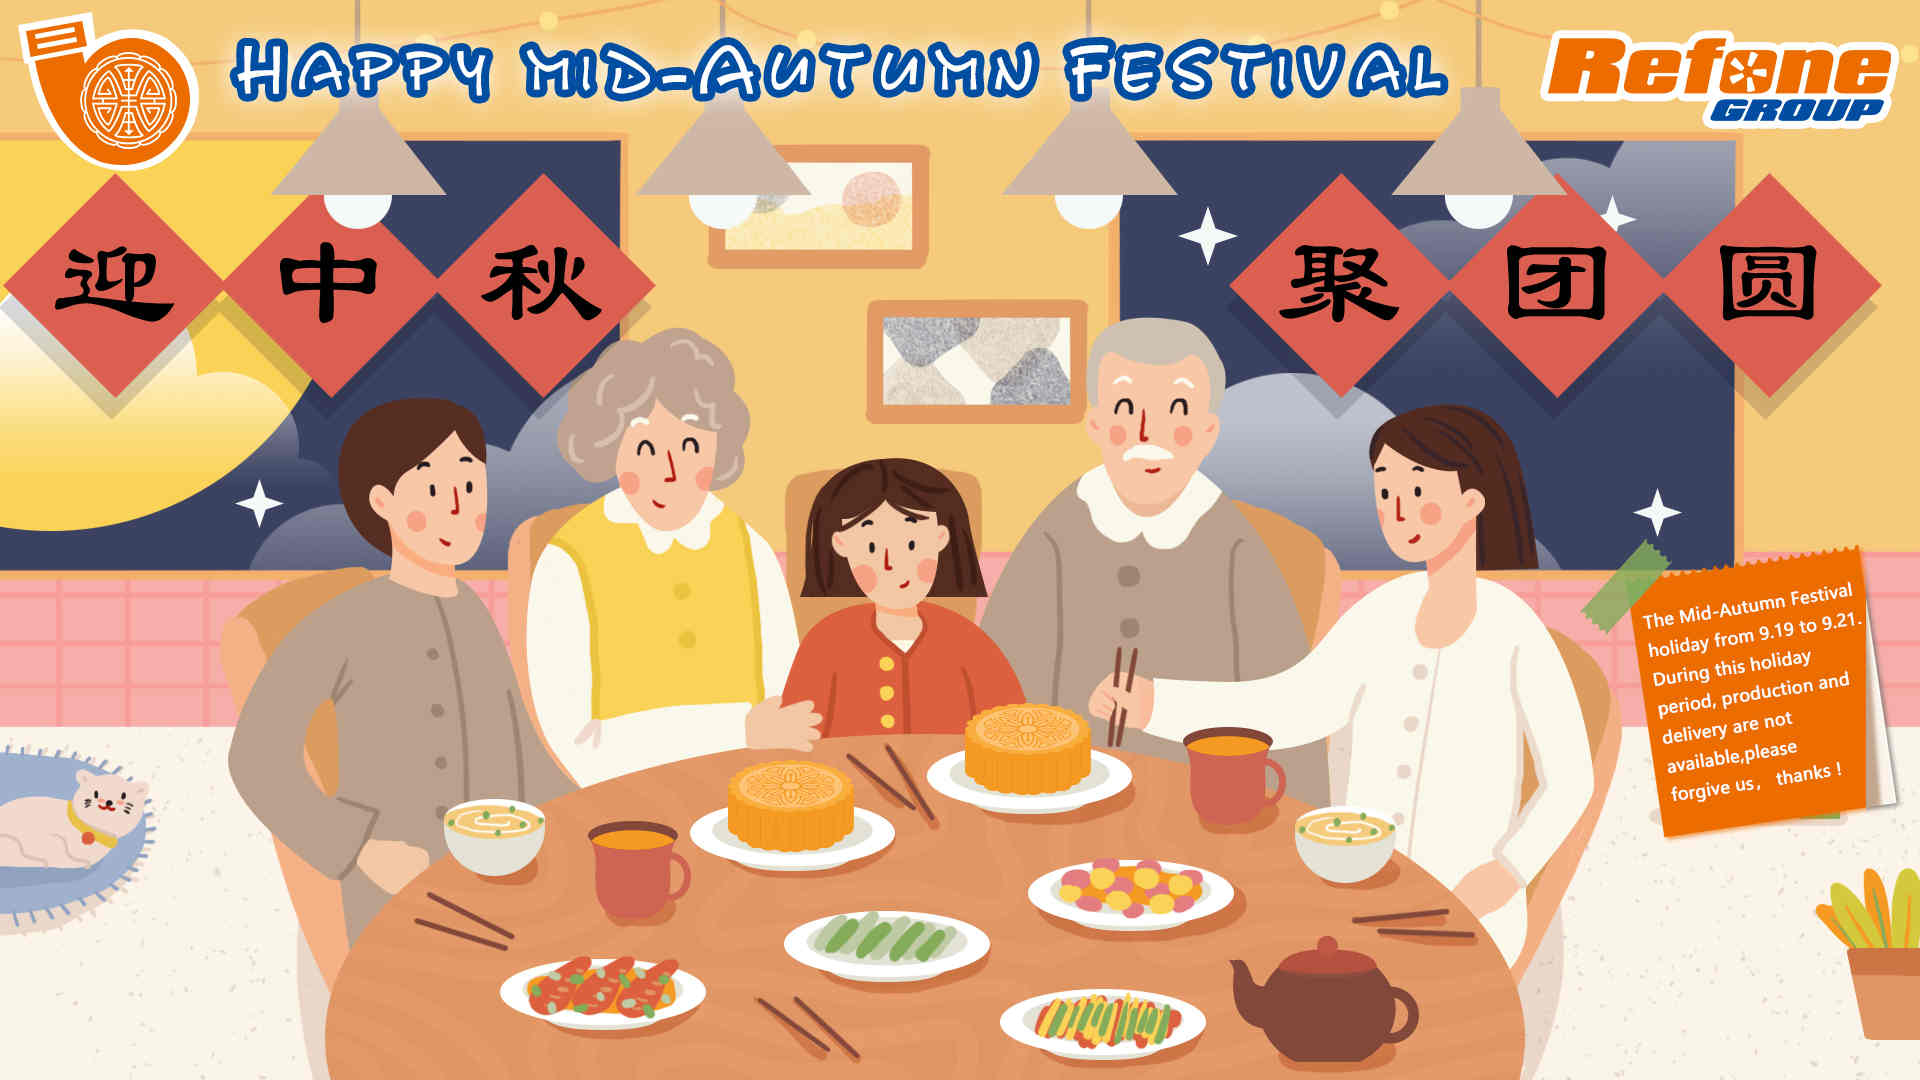 Se acerca el Festival Chino del Medio Otoño | Refoneturbo.com